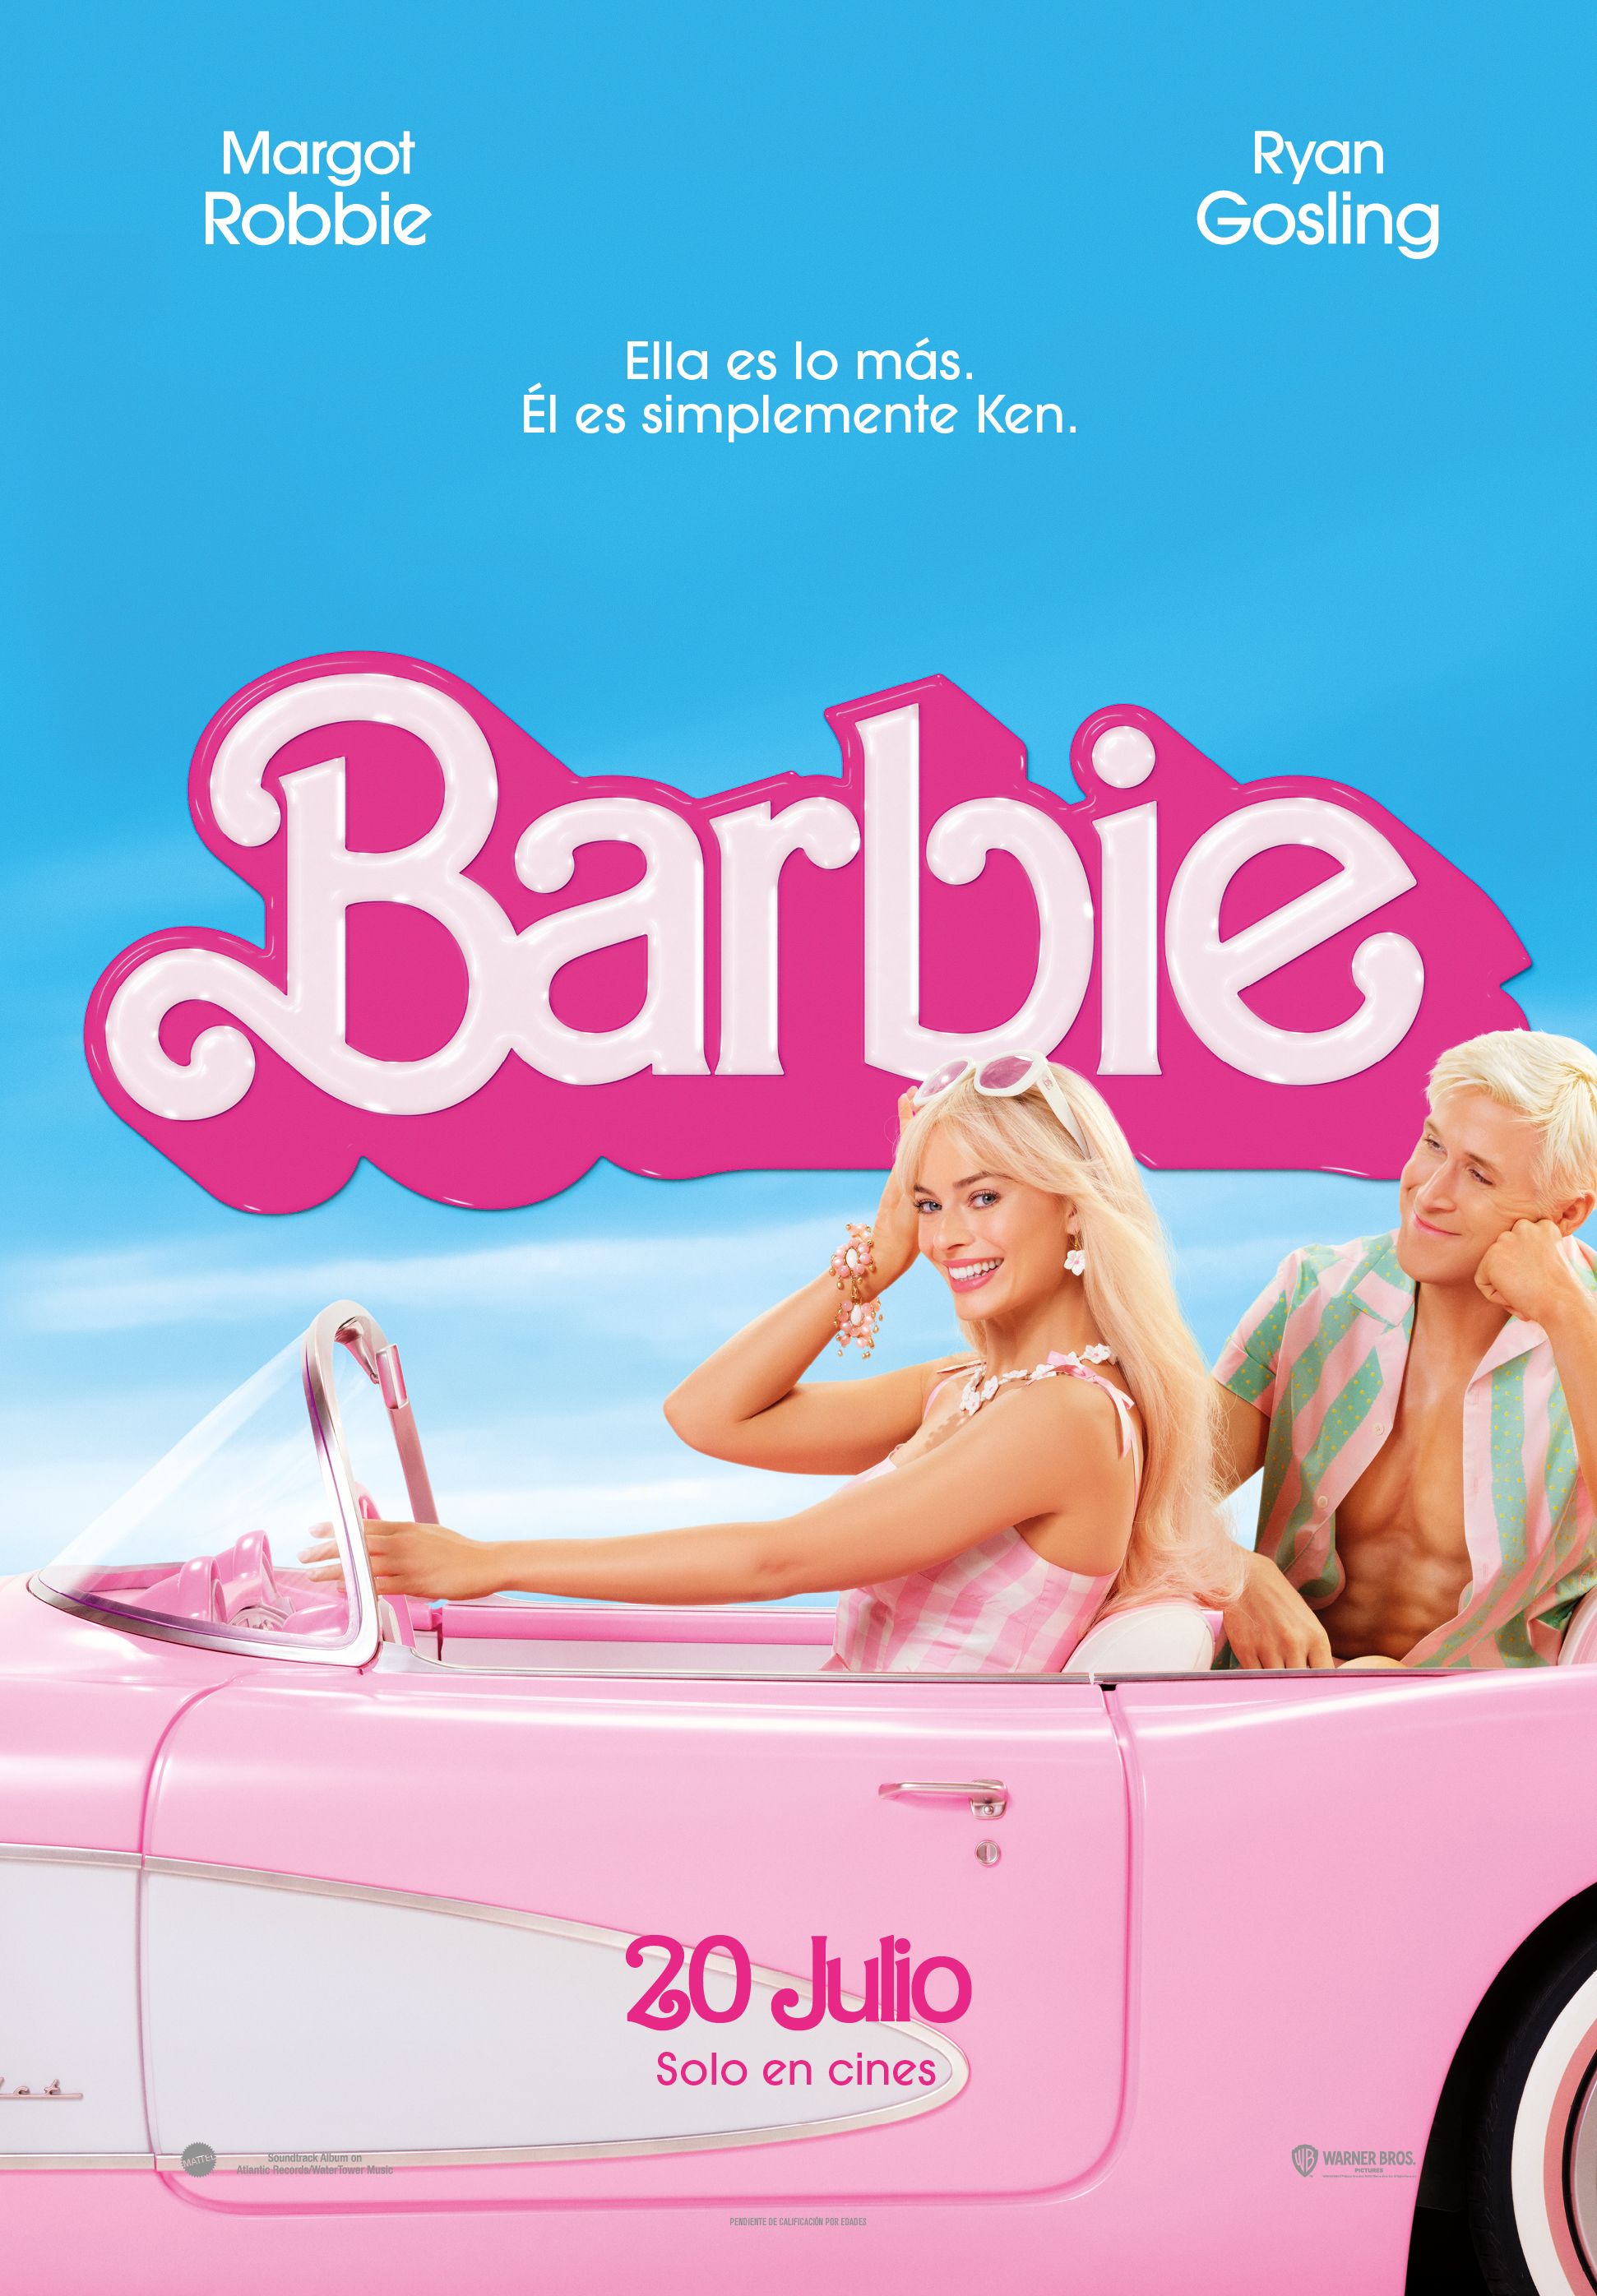 Barbie, la película familiar para adultos que ha generado polémica entre padres que no saben si pueden ir con niños